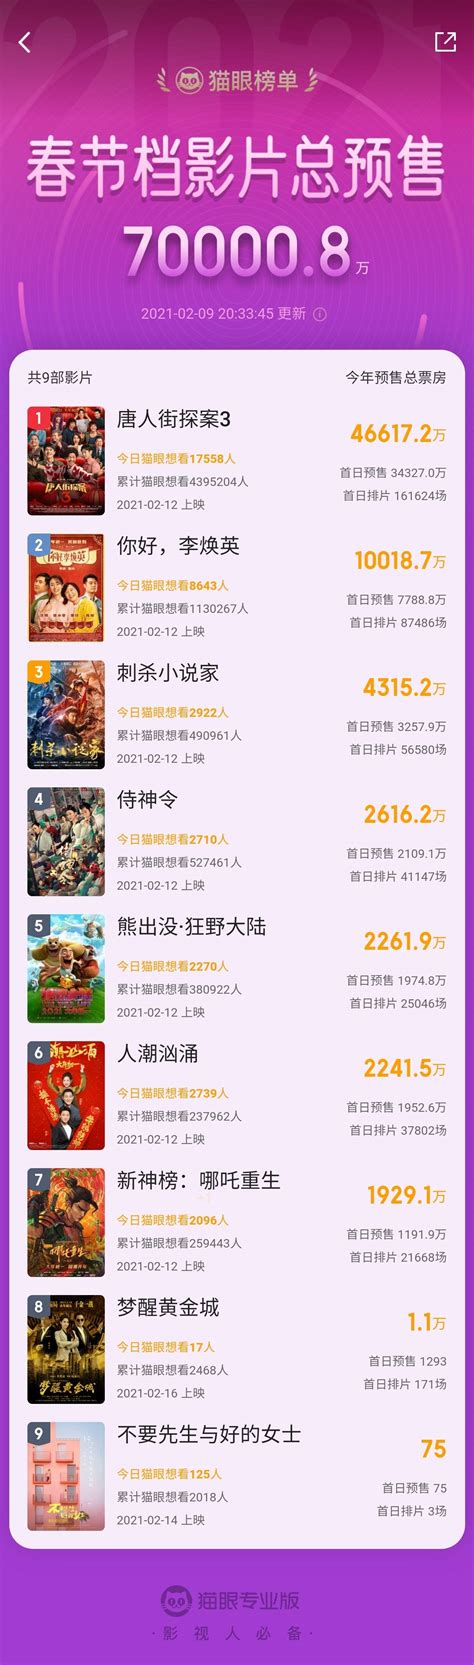 春节档影片预售总票房超7亿，今天单日净增1亿